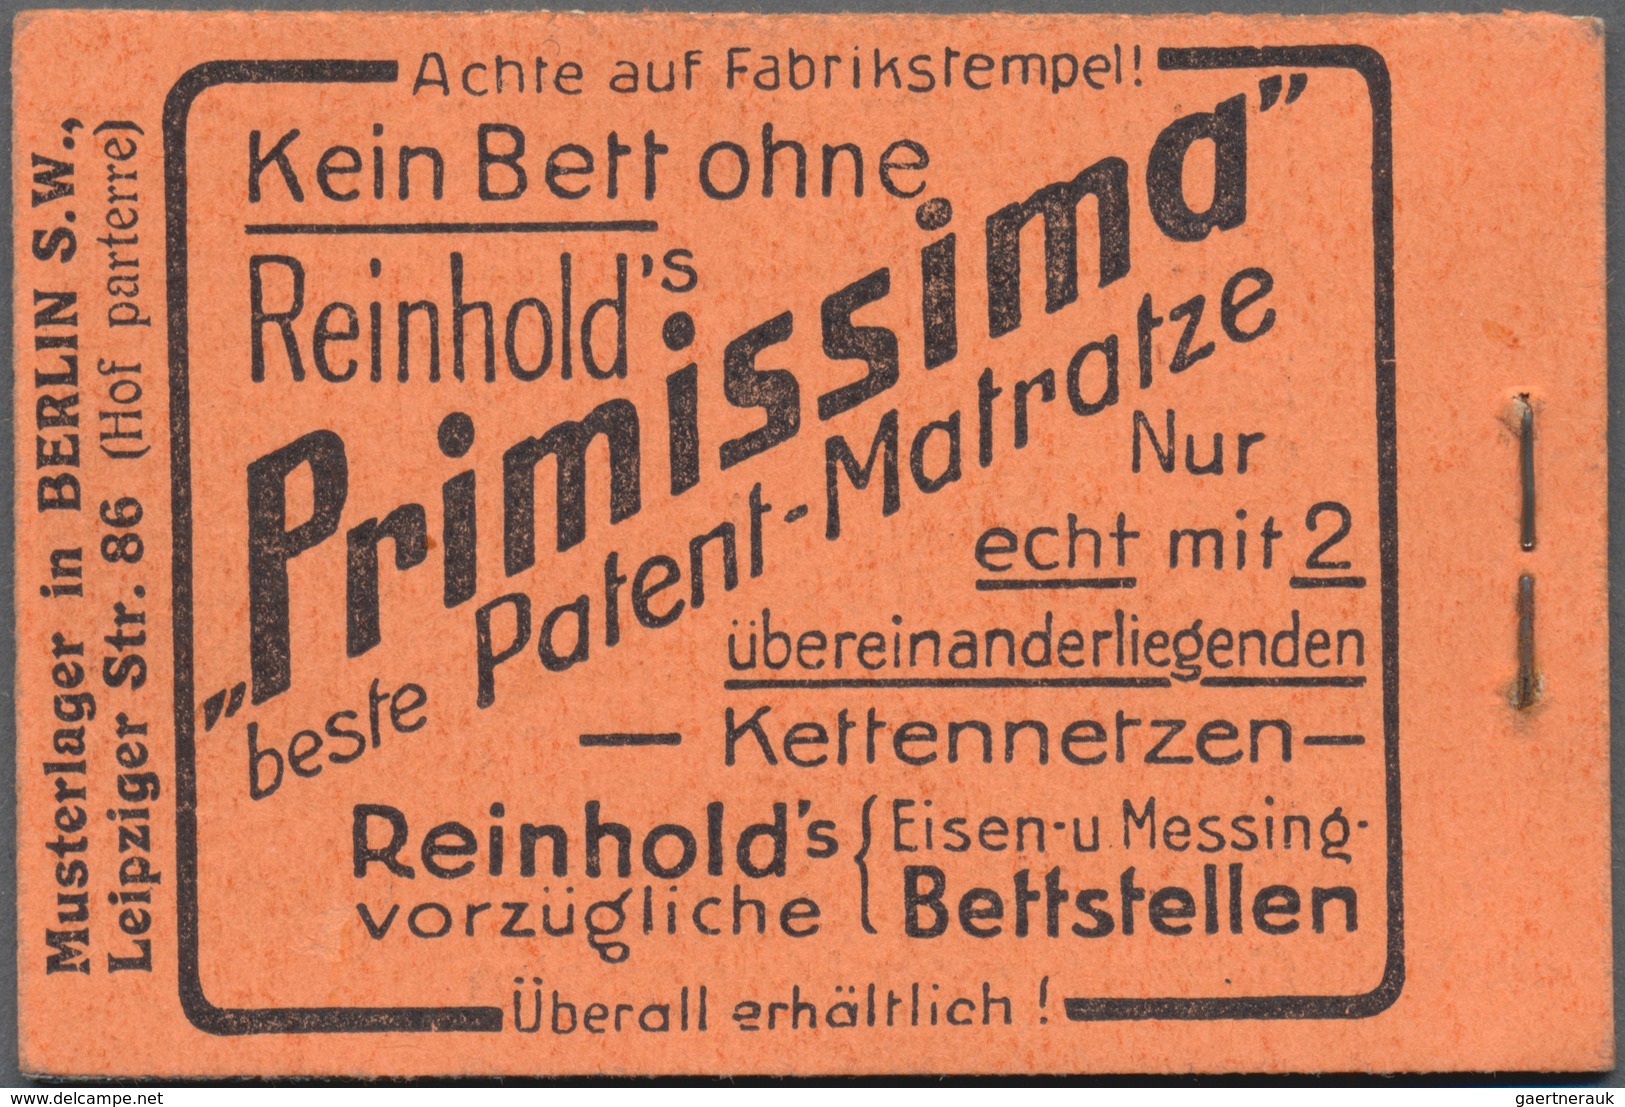 Deutsches Reich - Markenheftchen: 1913, Germania-Markenheftchen 2 Mark Auf Orangefarbenem Karton, Or - Booklets